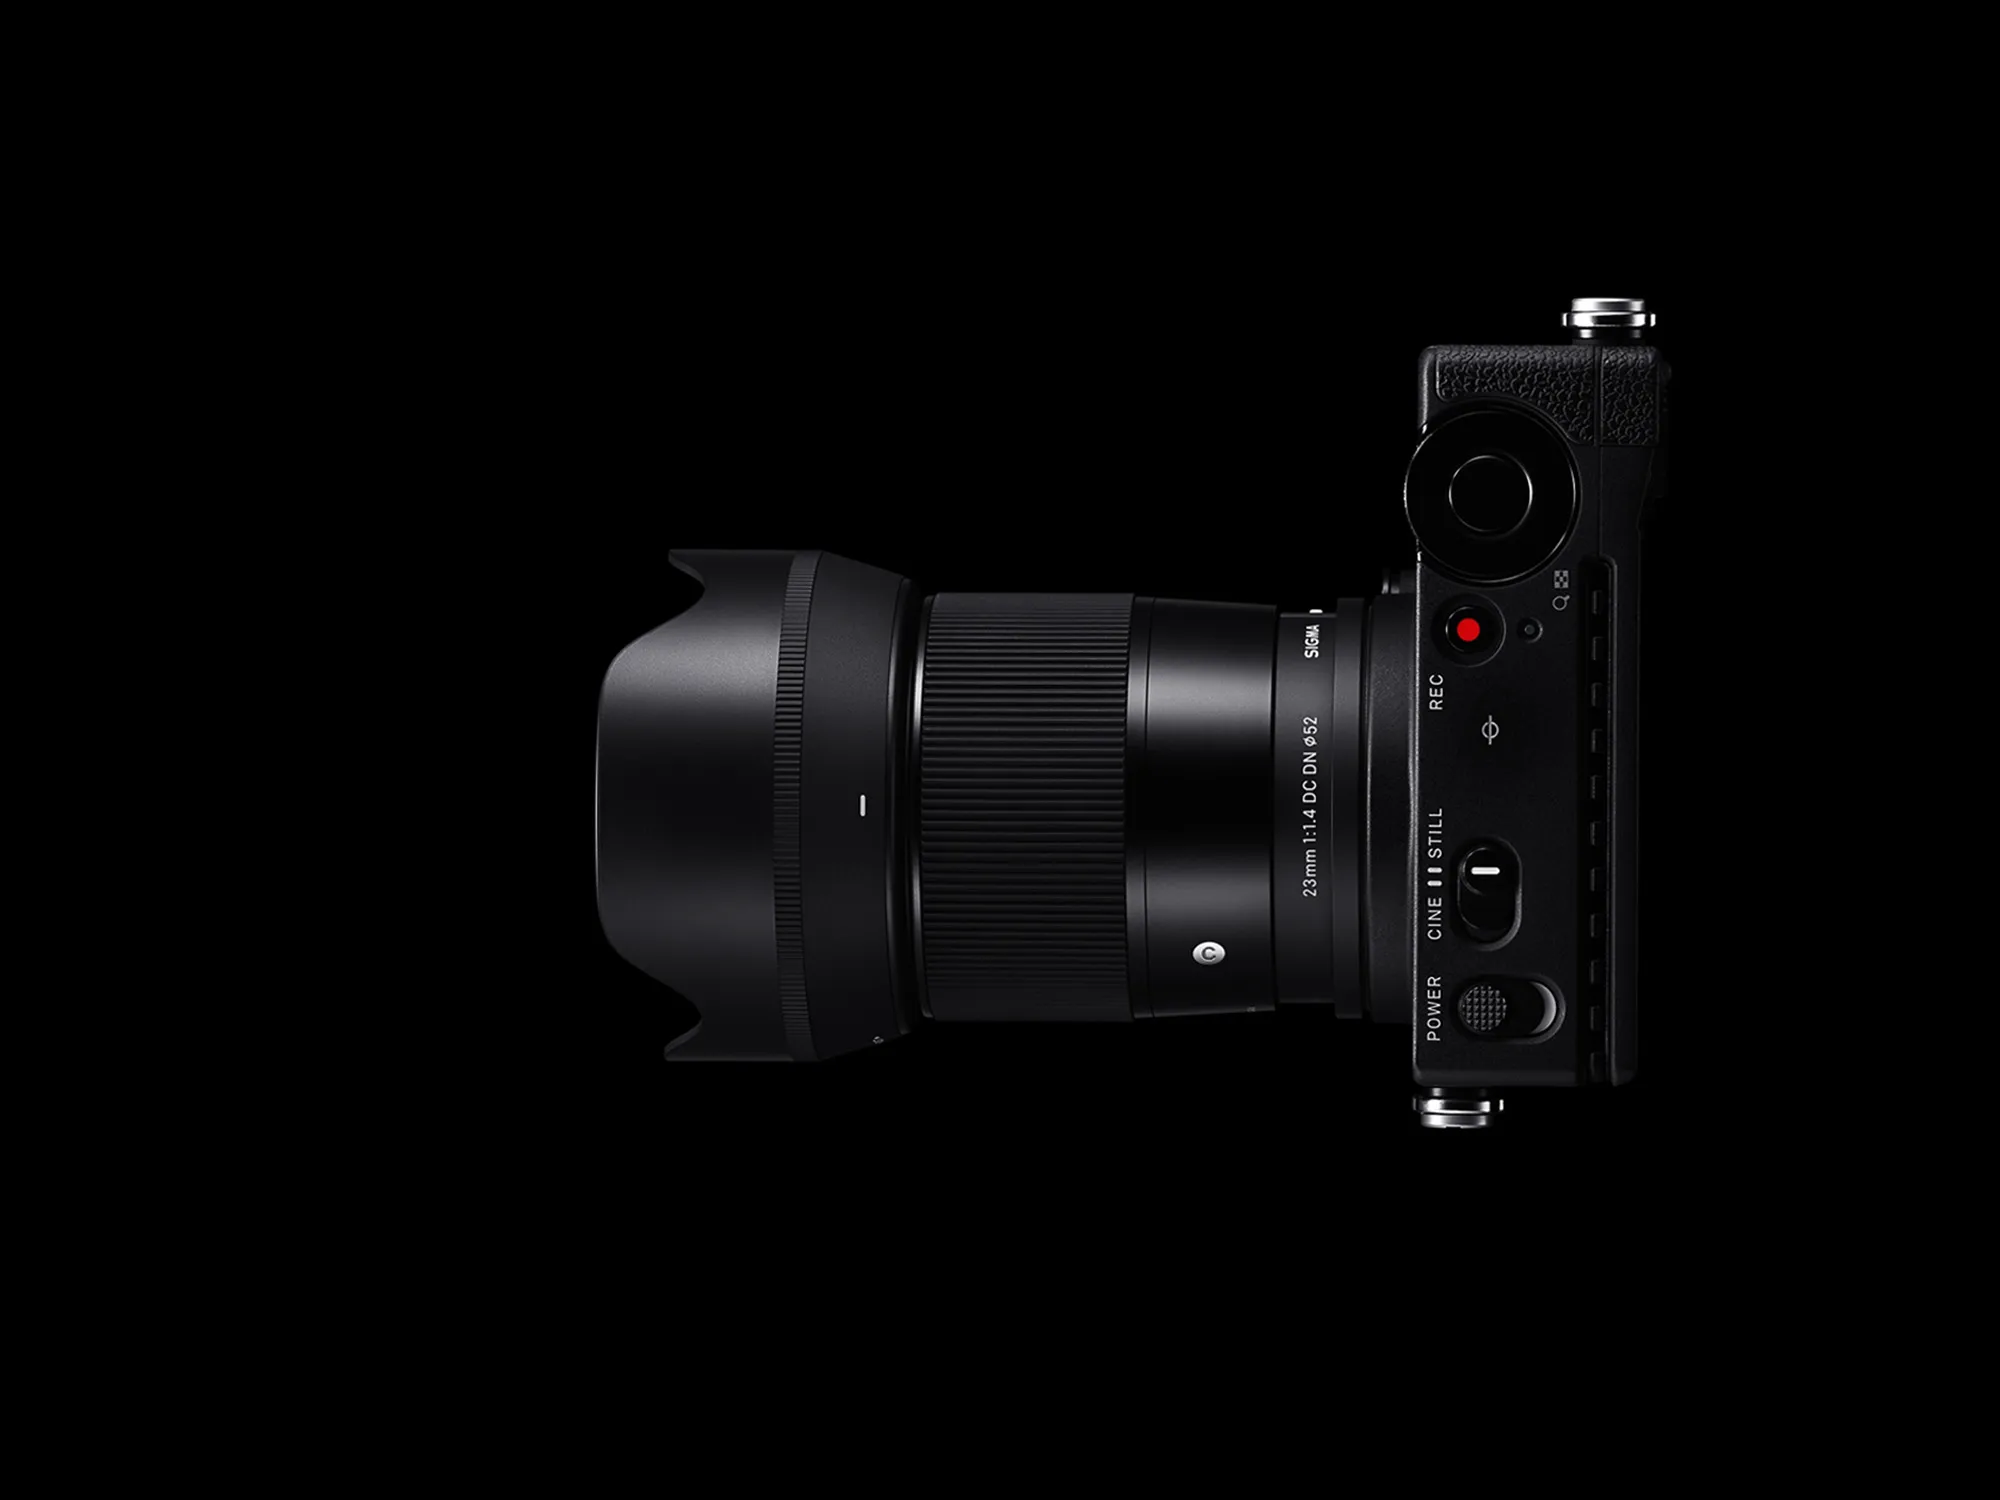 Sigma ra mắt ống kính 23mm F1.4 DC DN dành cho các máy ảnh APS-C ngàm E, ngàm X và ngàm L